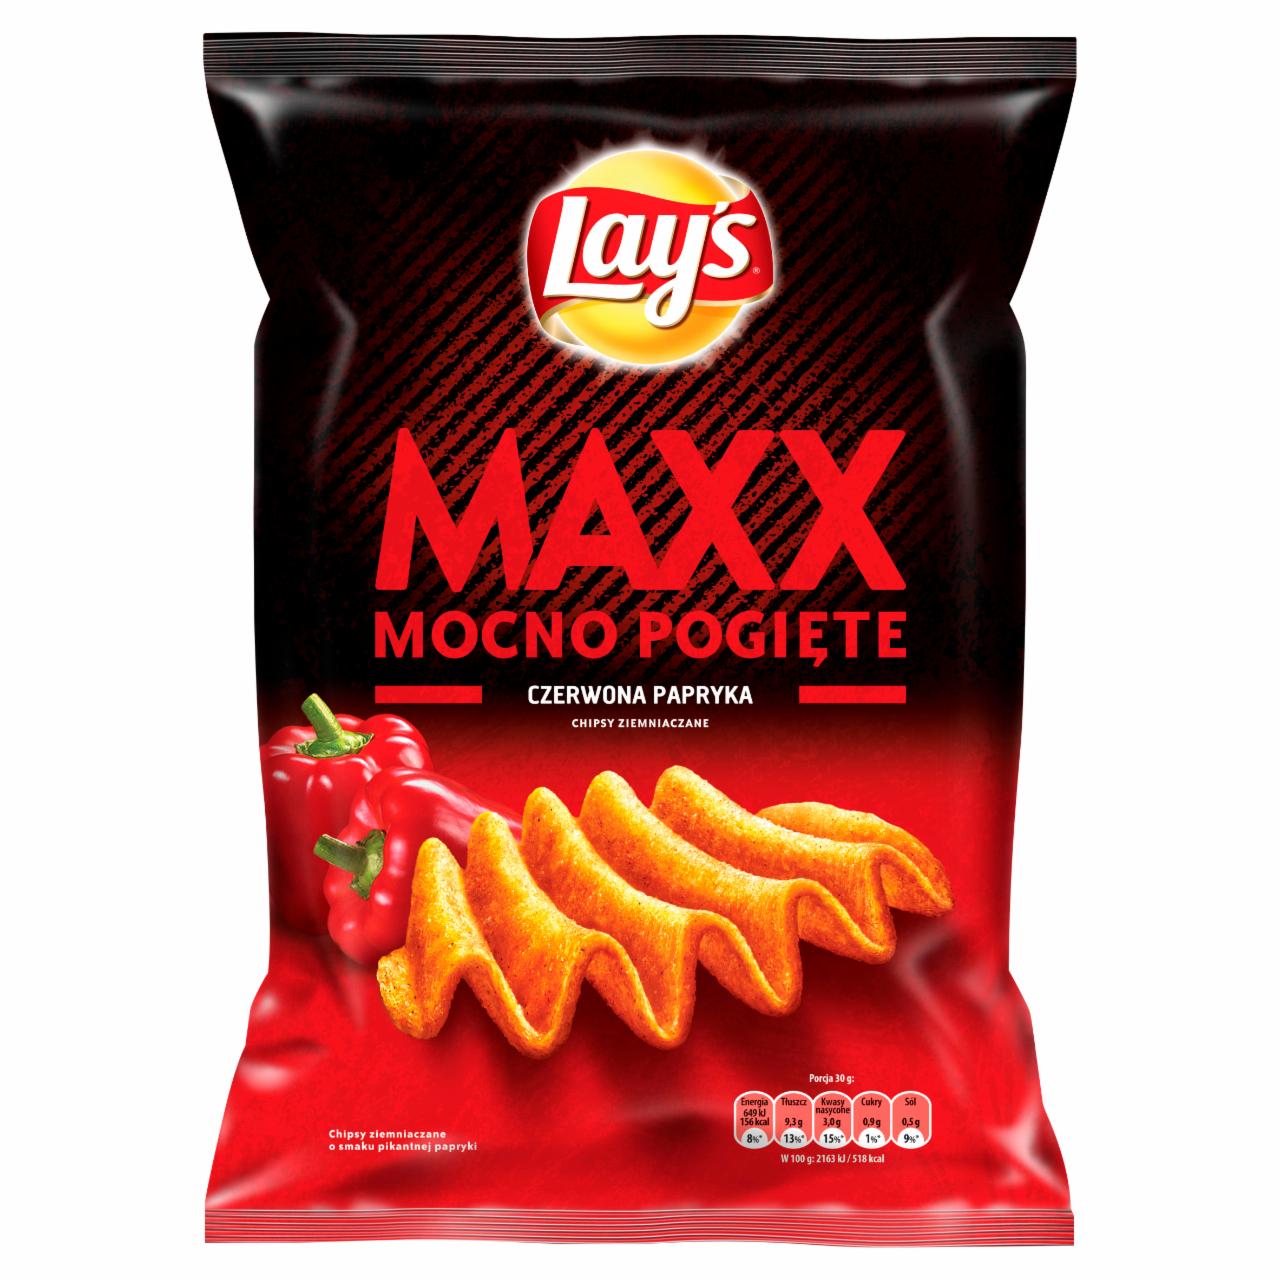 Zdjęcia - Lay's Maxx Mocno Pogięte Czerwona papryka Chipsy ziemniaczane 210 g